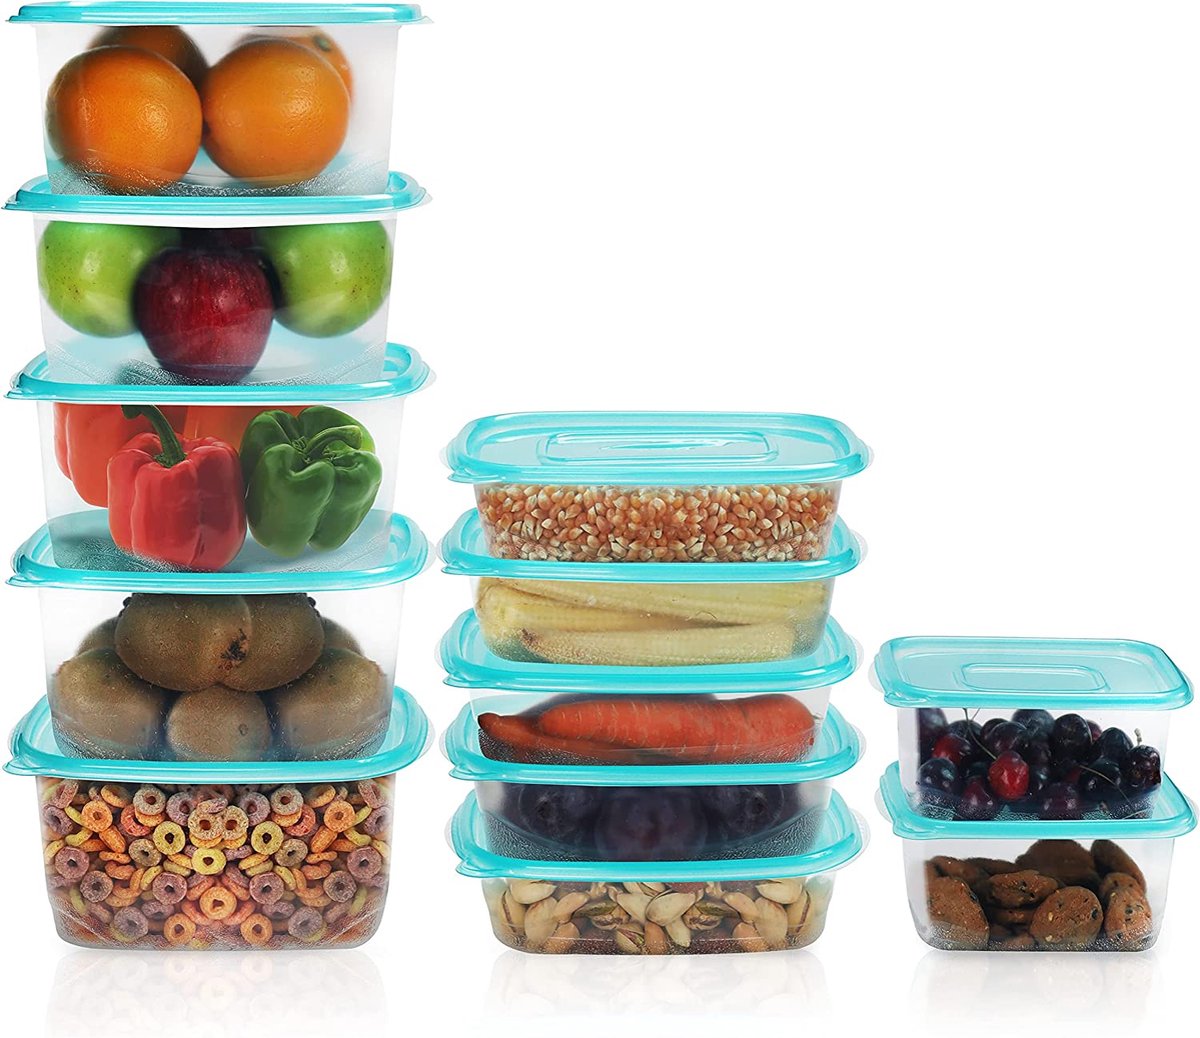 Belle Vous Helder Herbruikbare Plastic Voedsel Containers met Deksels (12pak in 3 Maten) - Lekbestendig, BPA Vrije Voedsel Opslag Containers - Magnetron, Diepvries & Vaatwasser Veilig – Mealprep Dozen